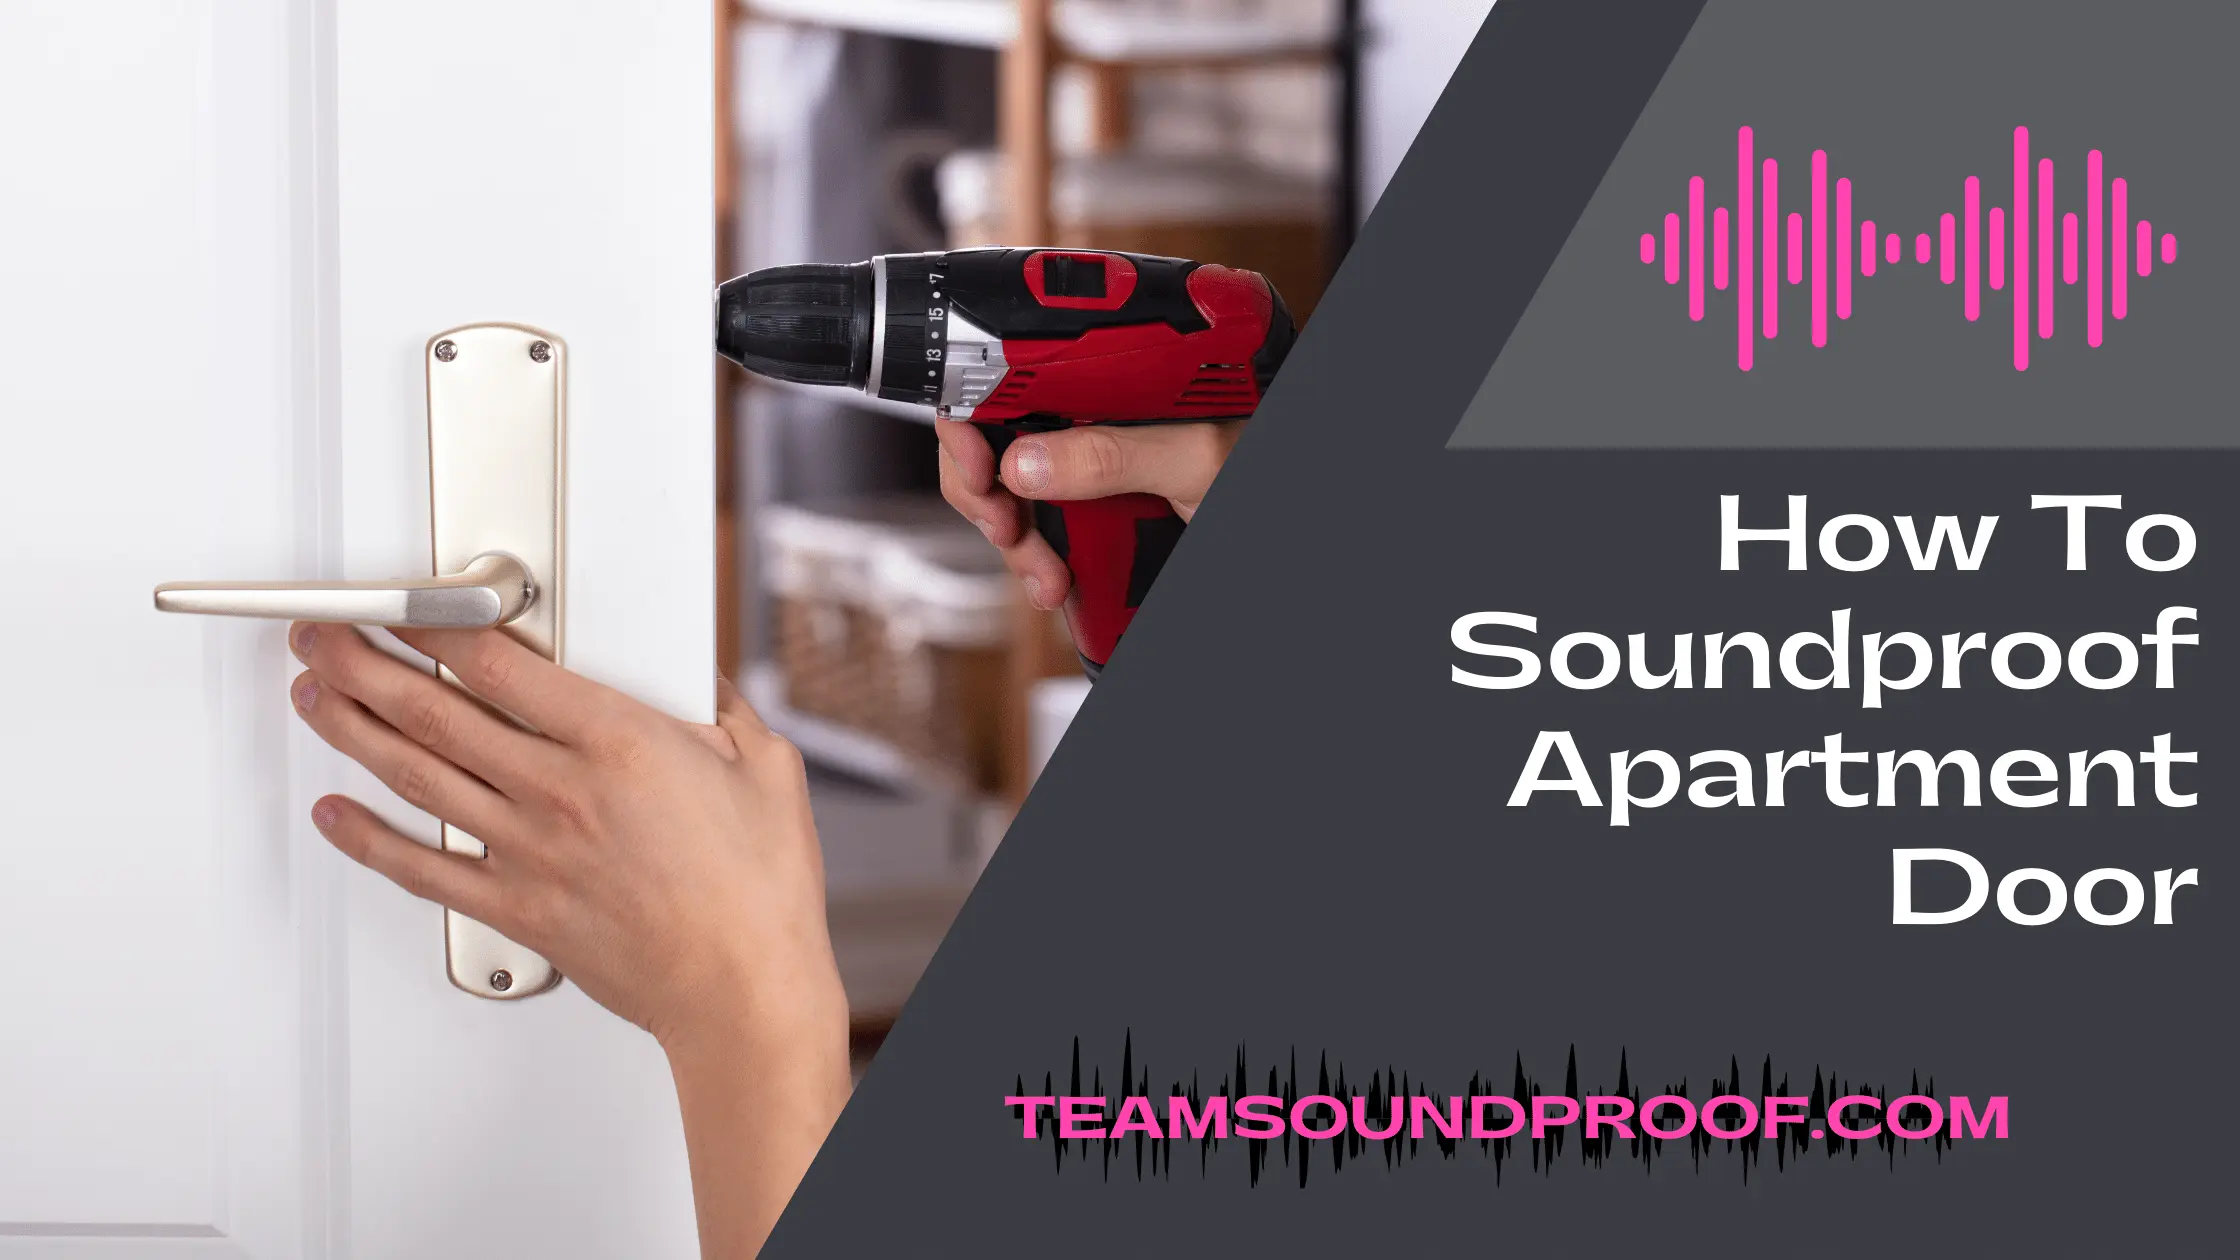 How to Soundproof Apartment Door?